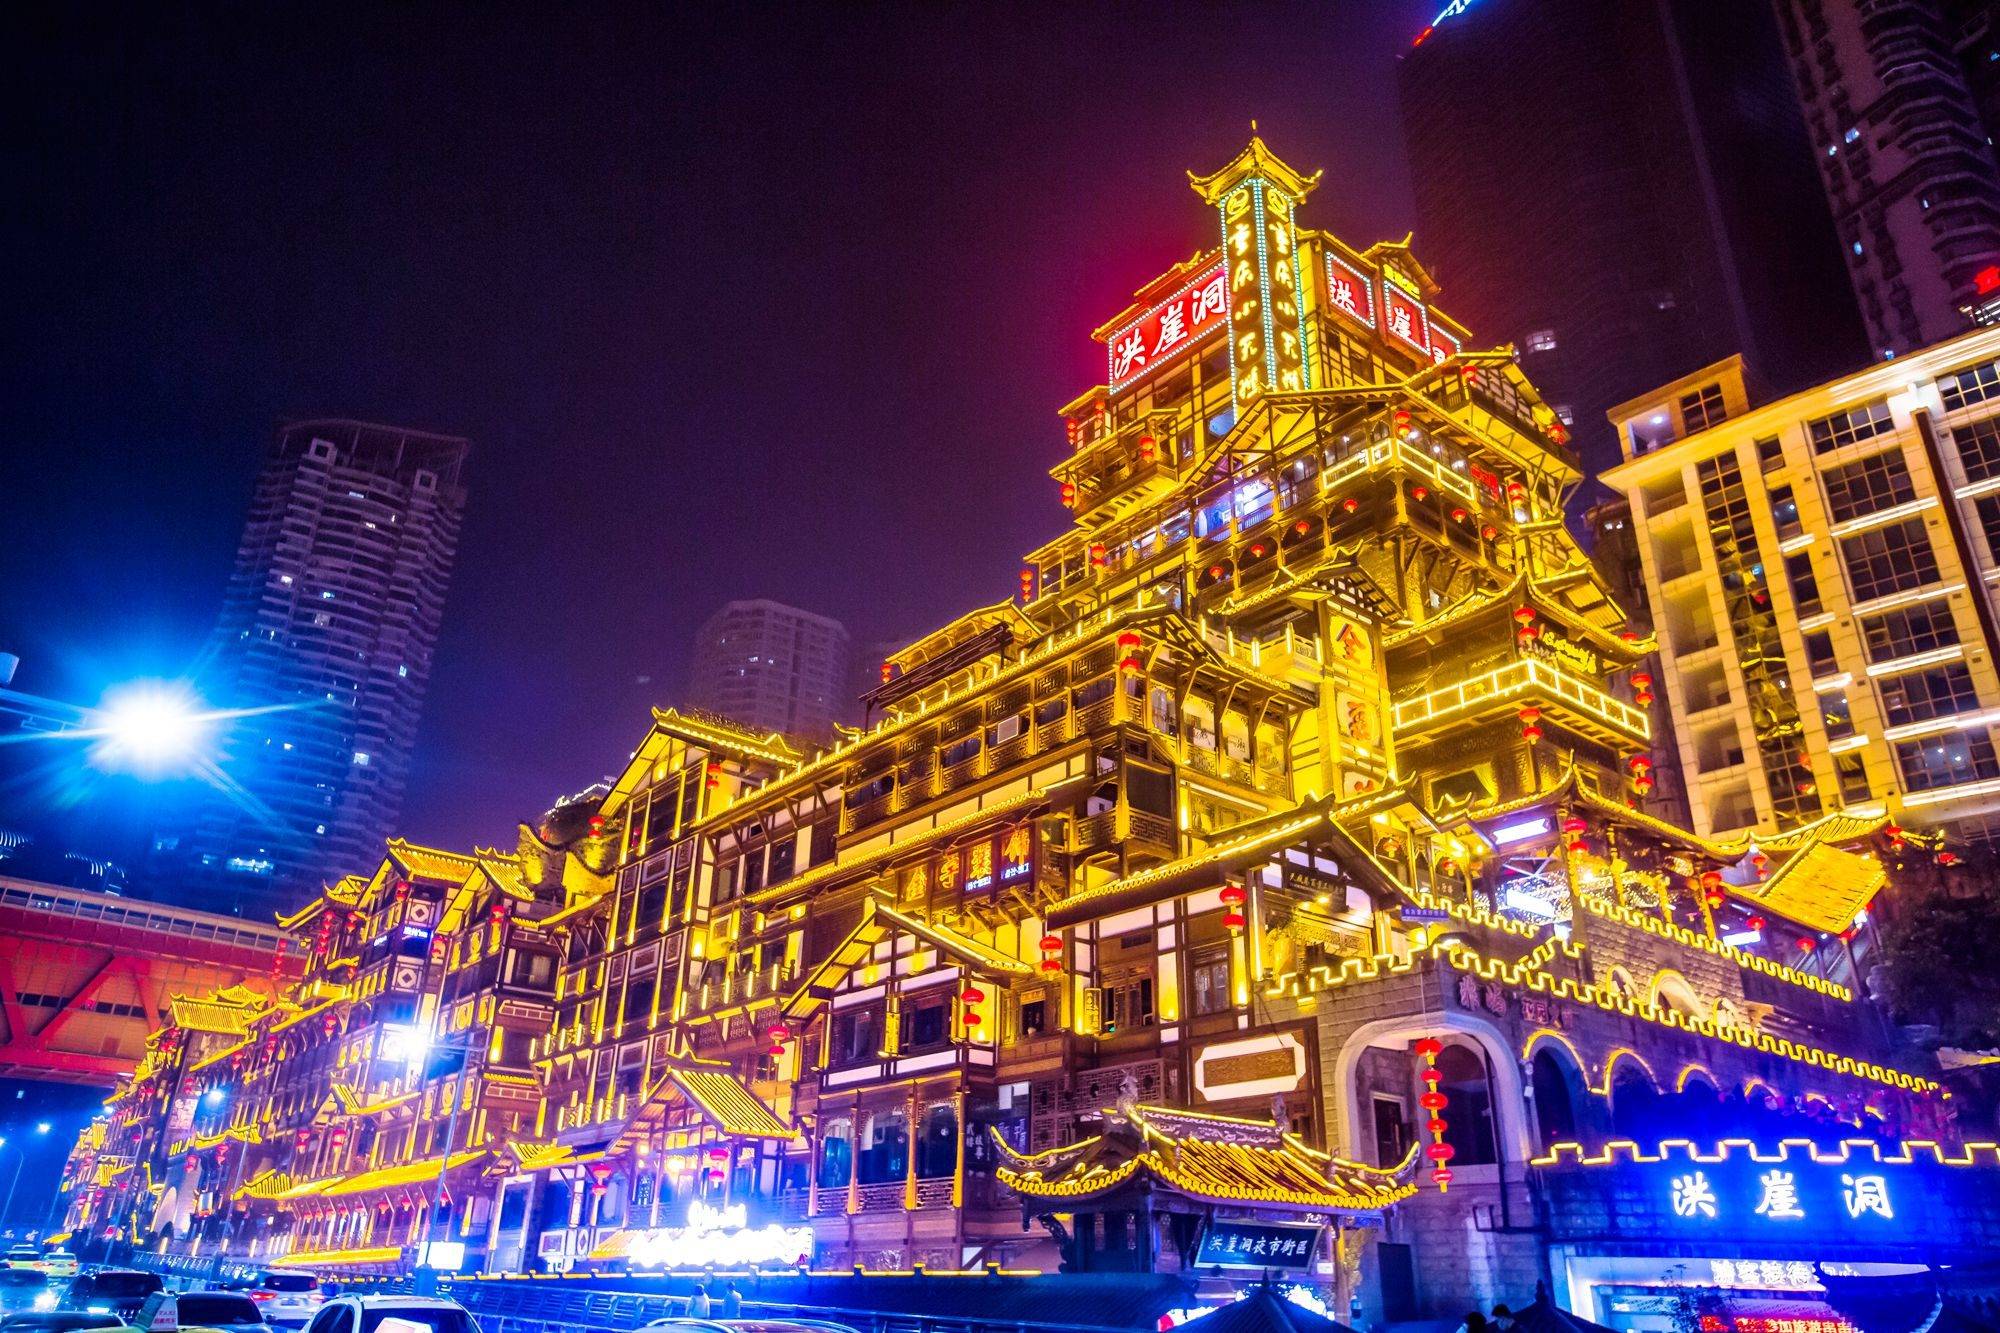 这是一张展示夜晚灯光璀璨的中国传统建筑照片，建筑物金色灯光映衬，与现代高楼大厦形成鲜明对比。